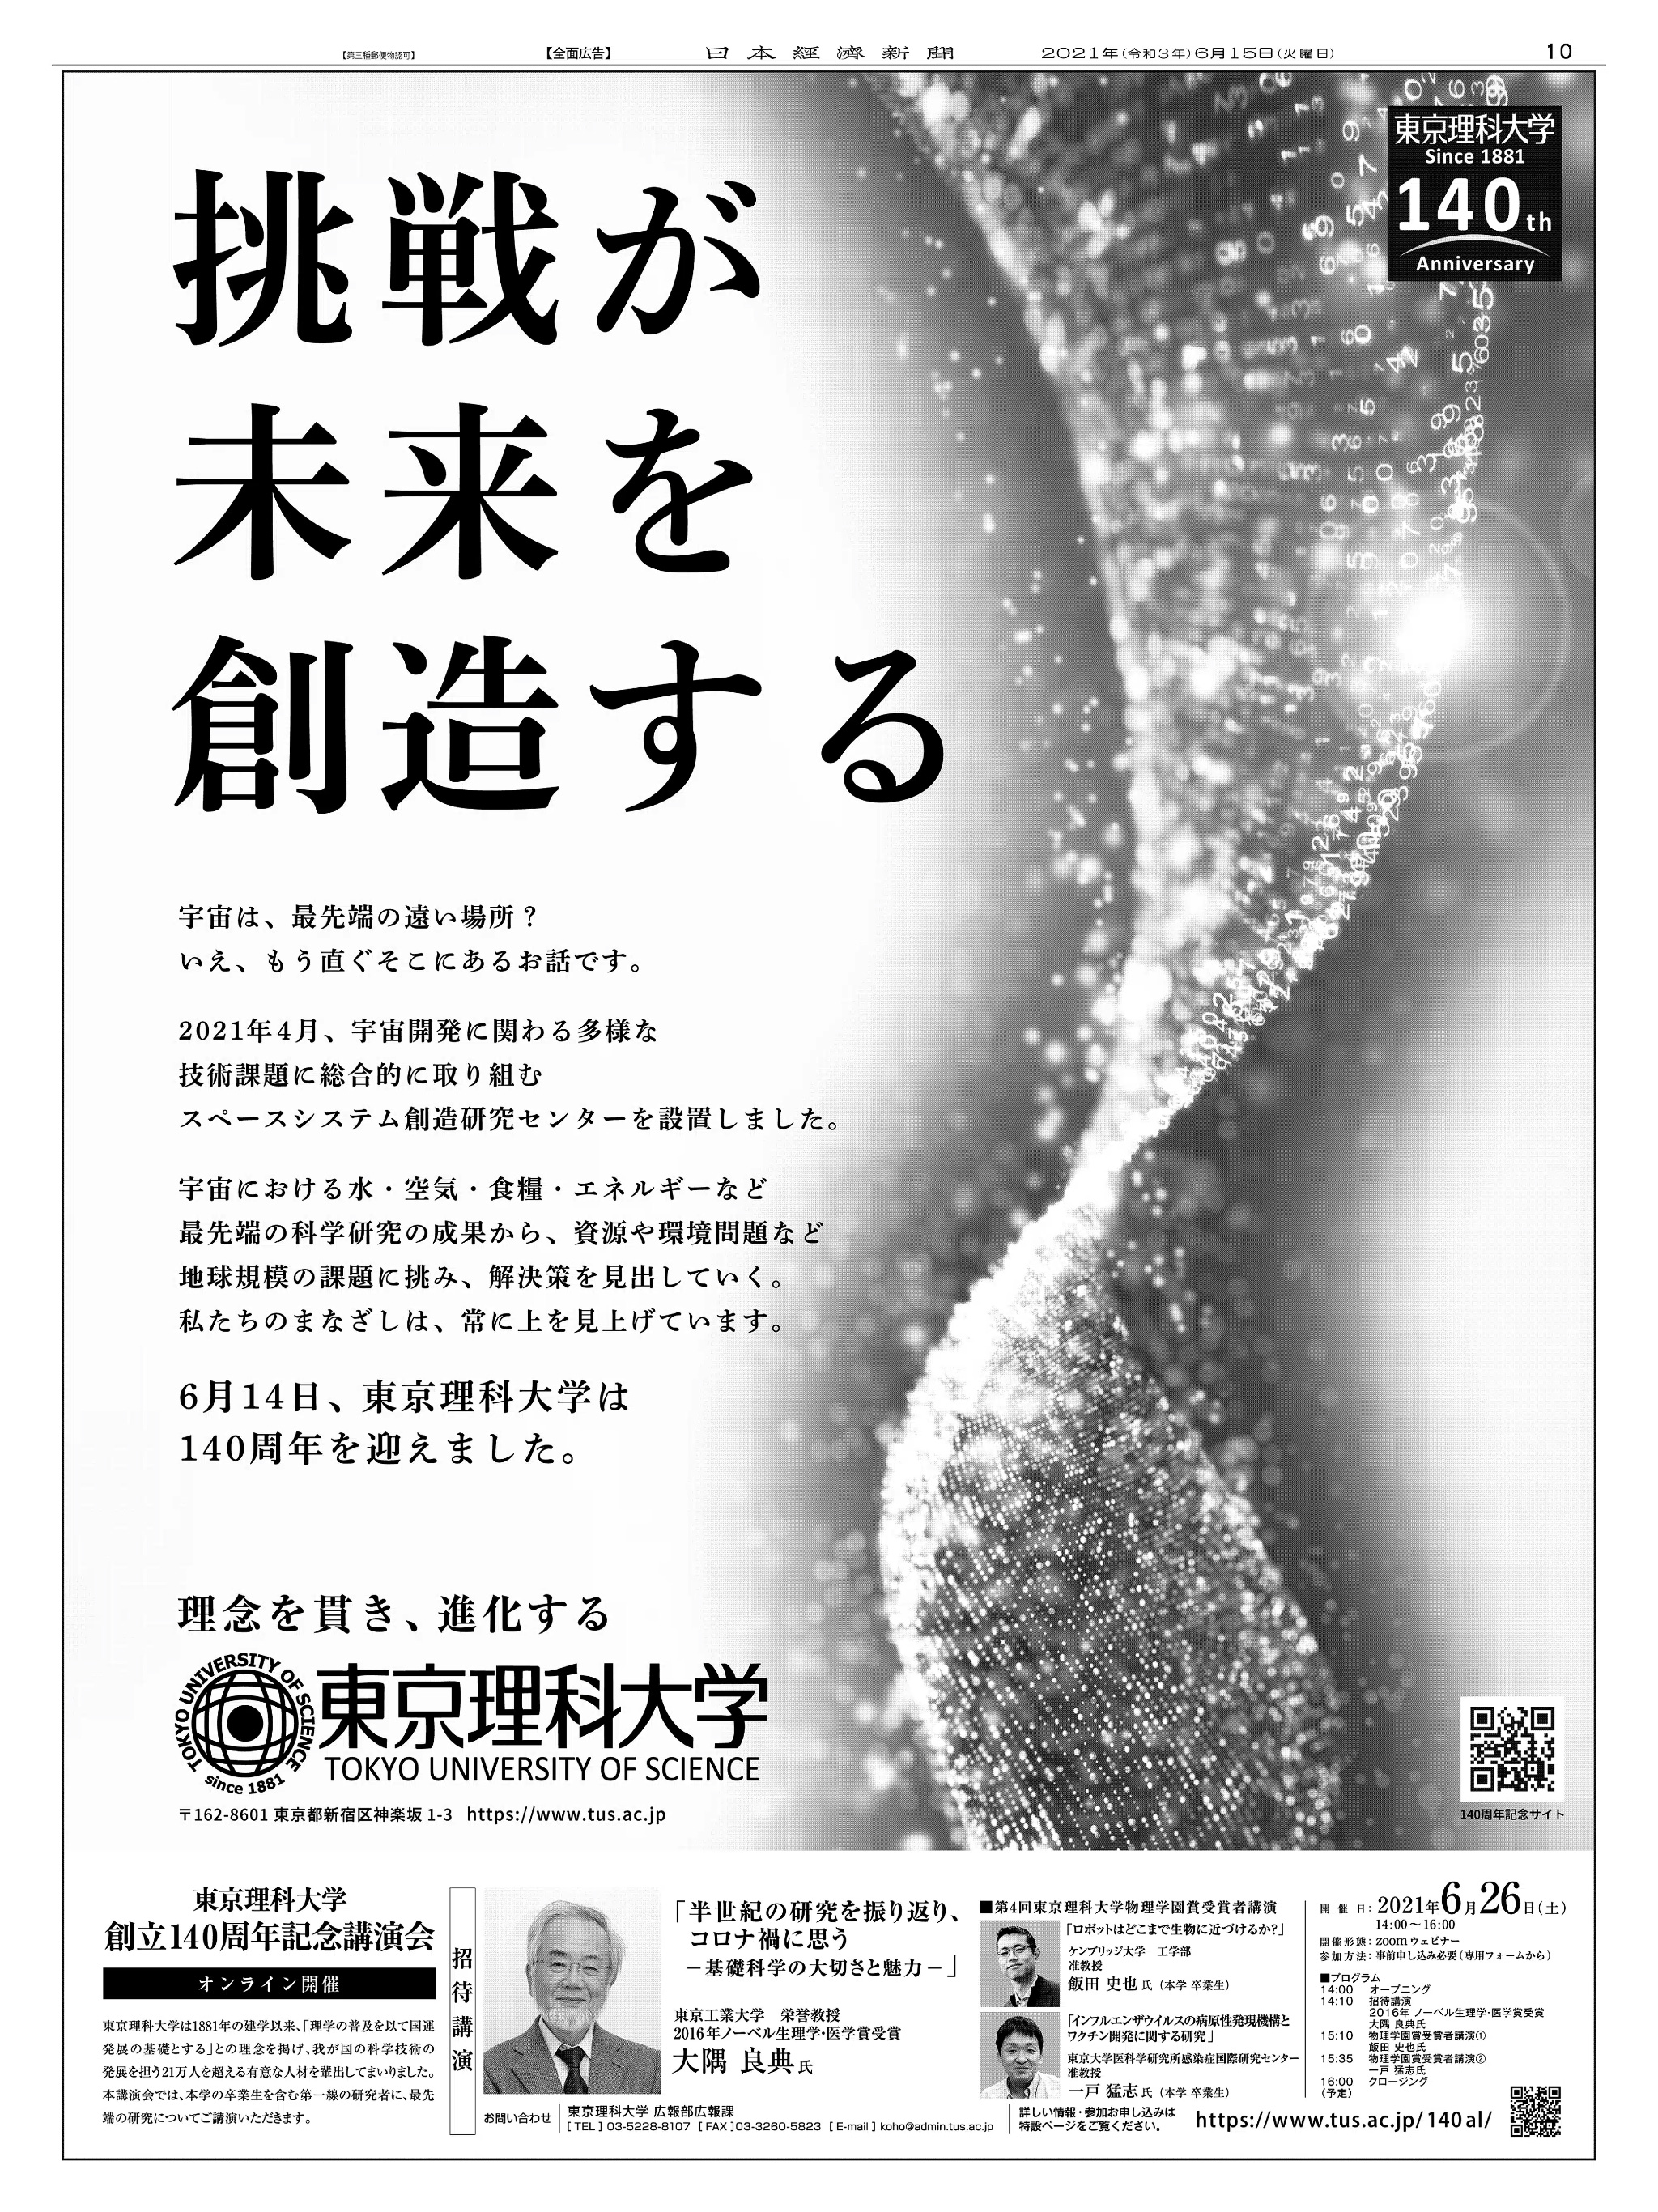 周年記念広告事例 「東京理科大学 創立140周年」